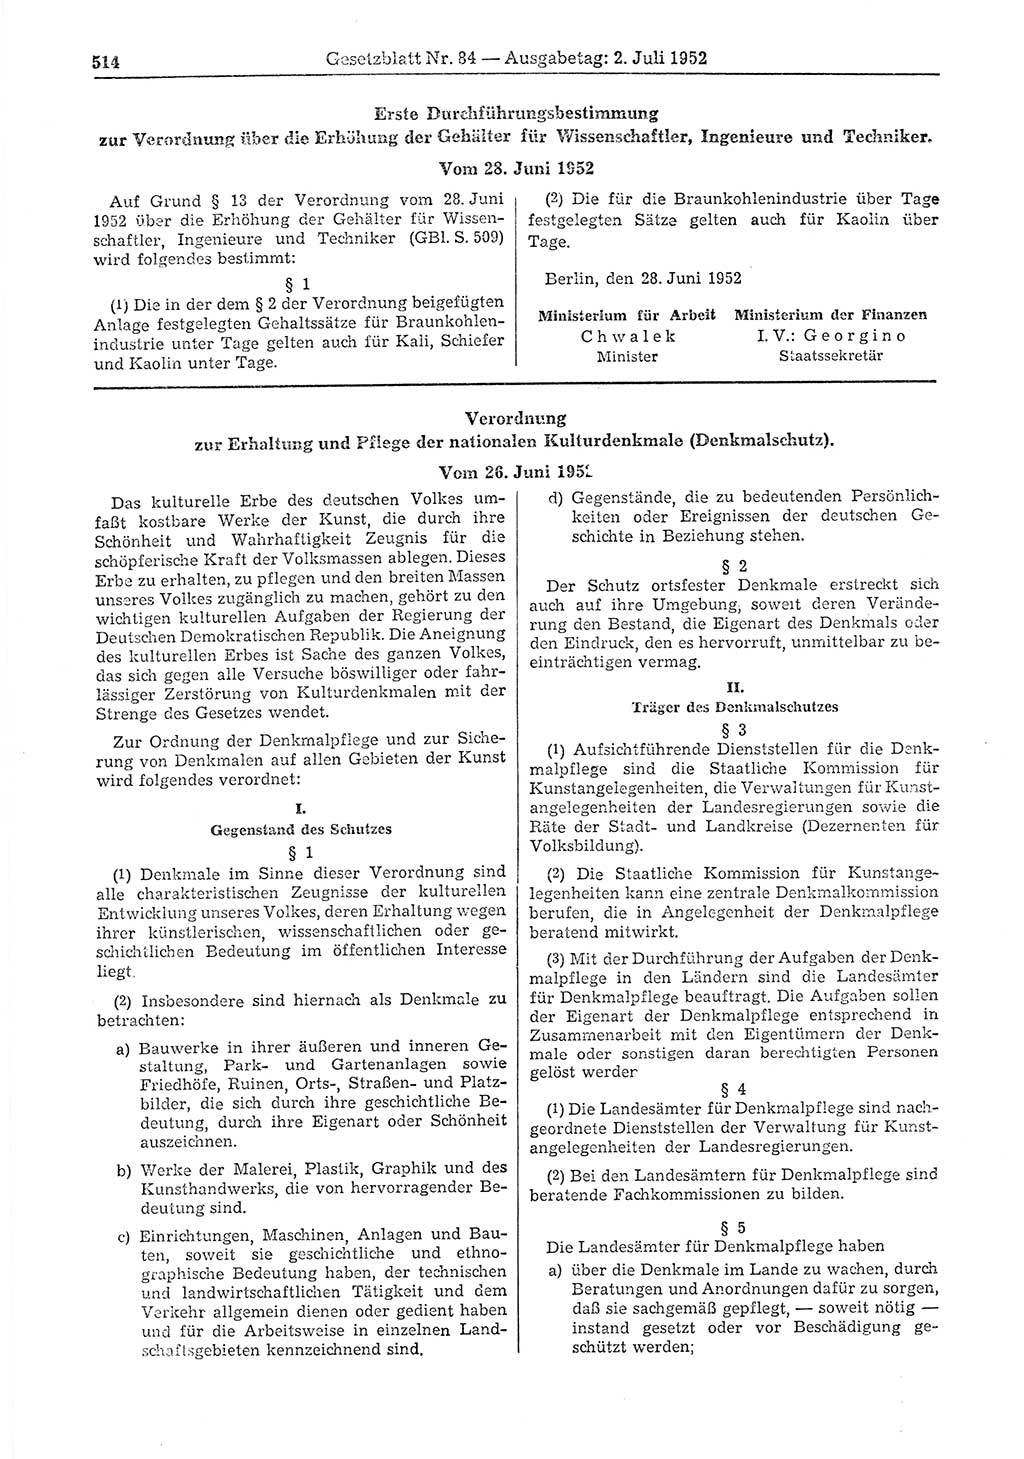 Gesetzblatt (GBl.) der Deutschen Demokratischen Republik (DDR) 1952, Seite 514 (GBl. DDR 1952, S. 514)